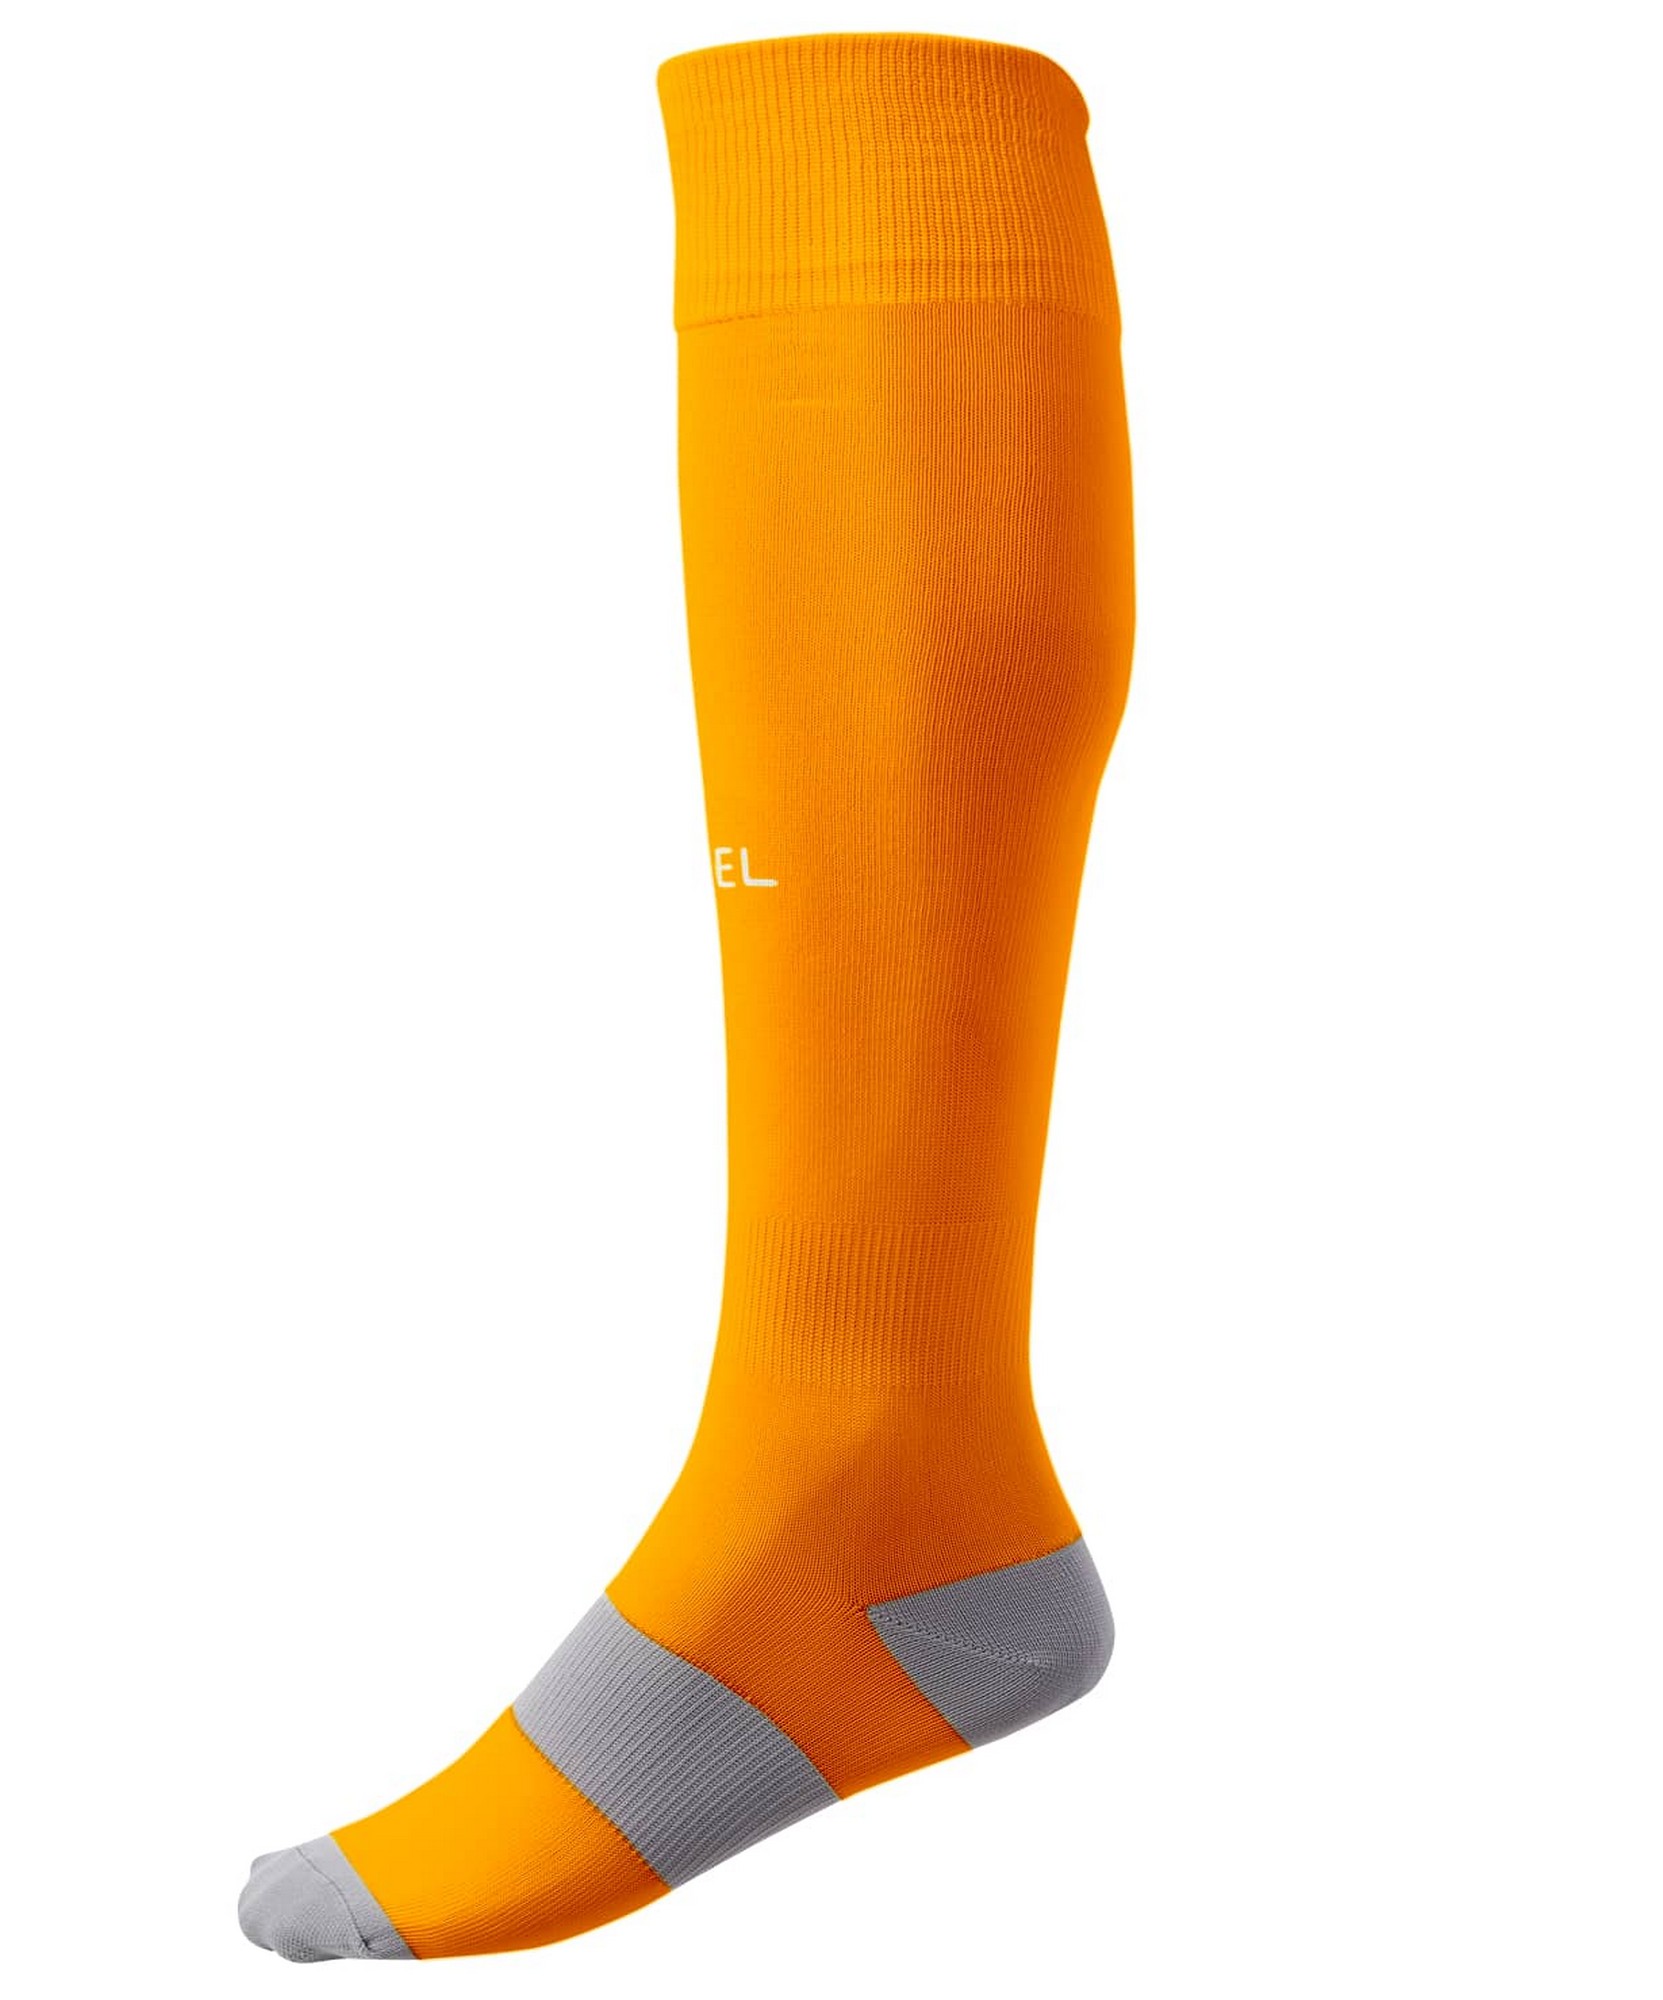 Купить Гетры футбольные Jögel Camp Basic Socks оранжевыйсерыйбелый,